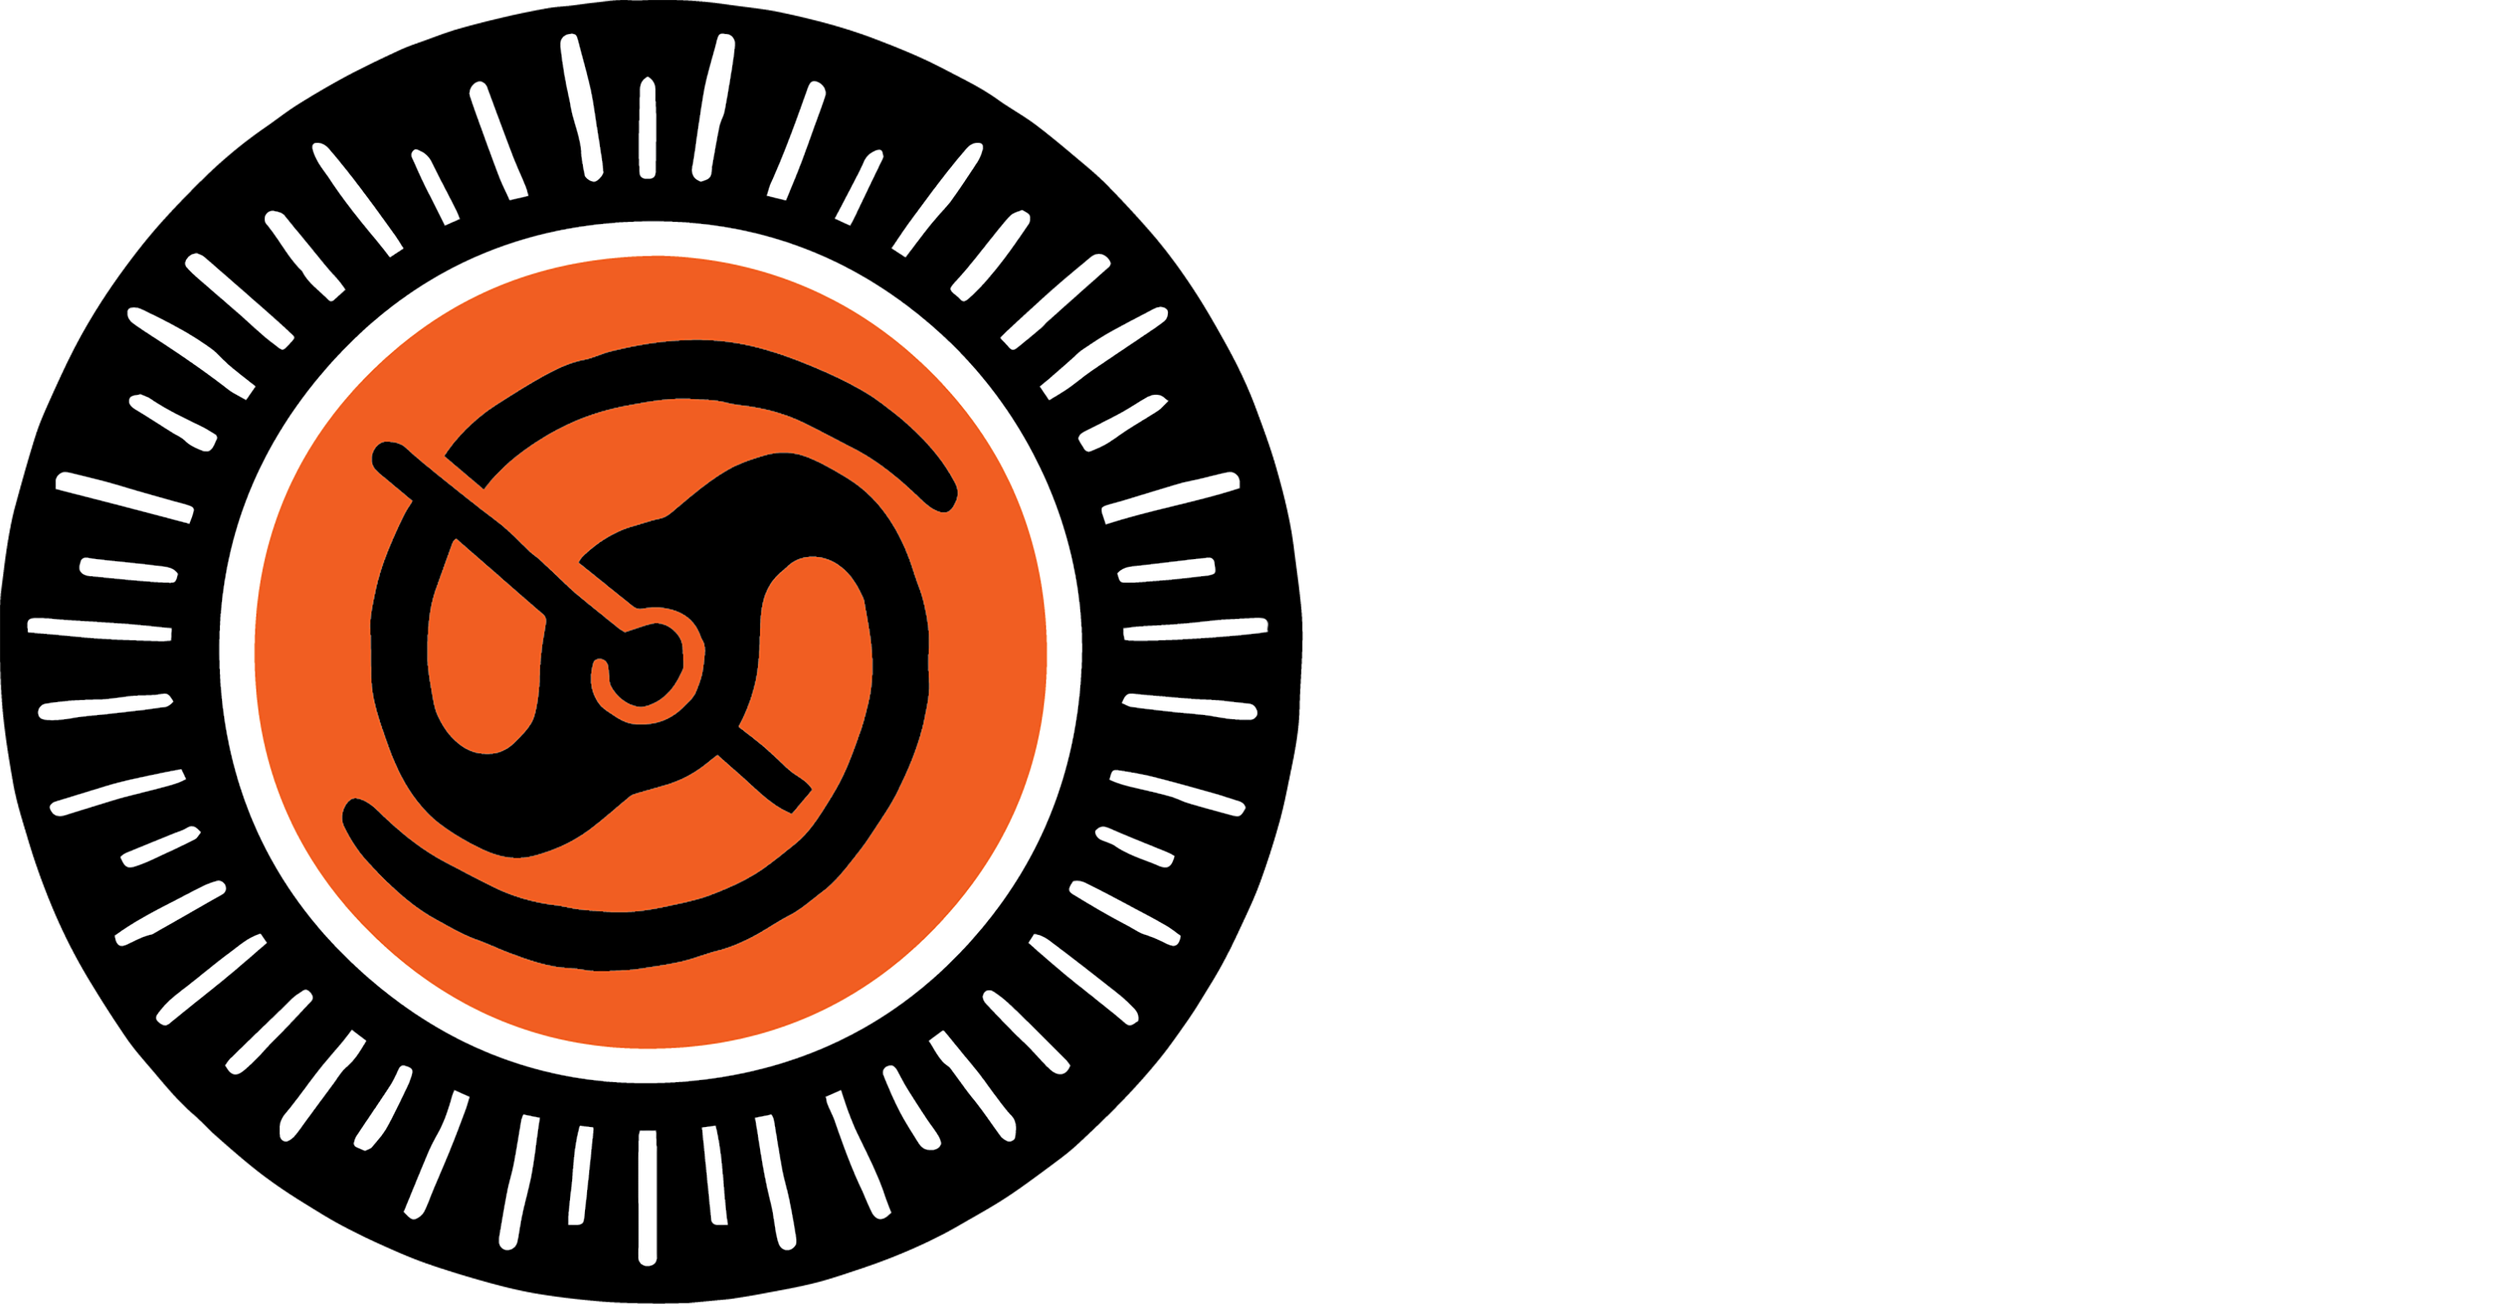 The Werk Squad